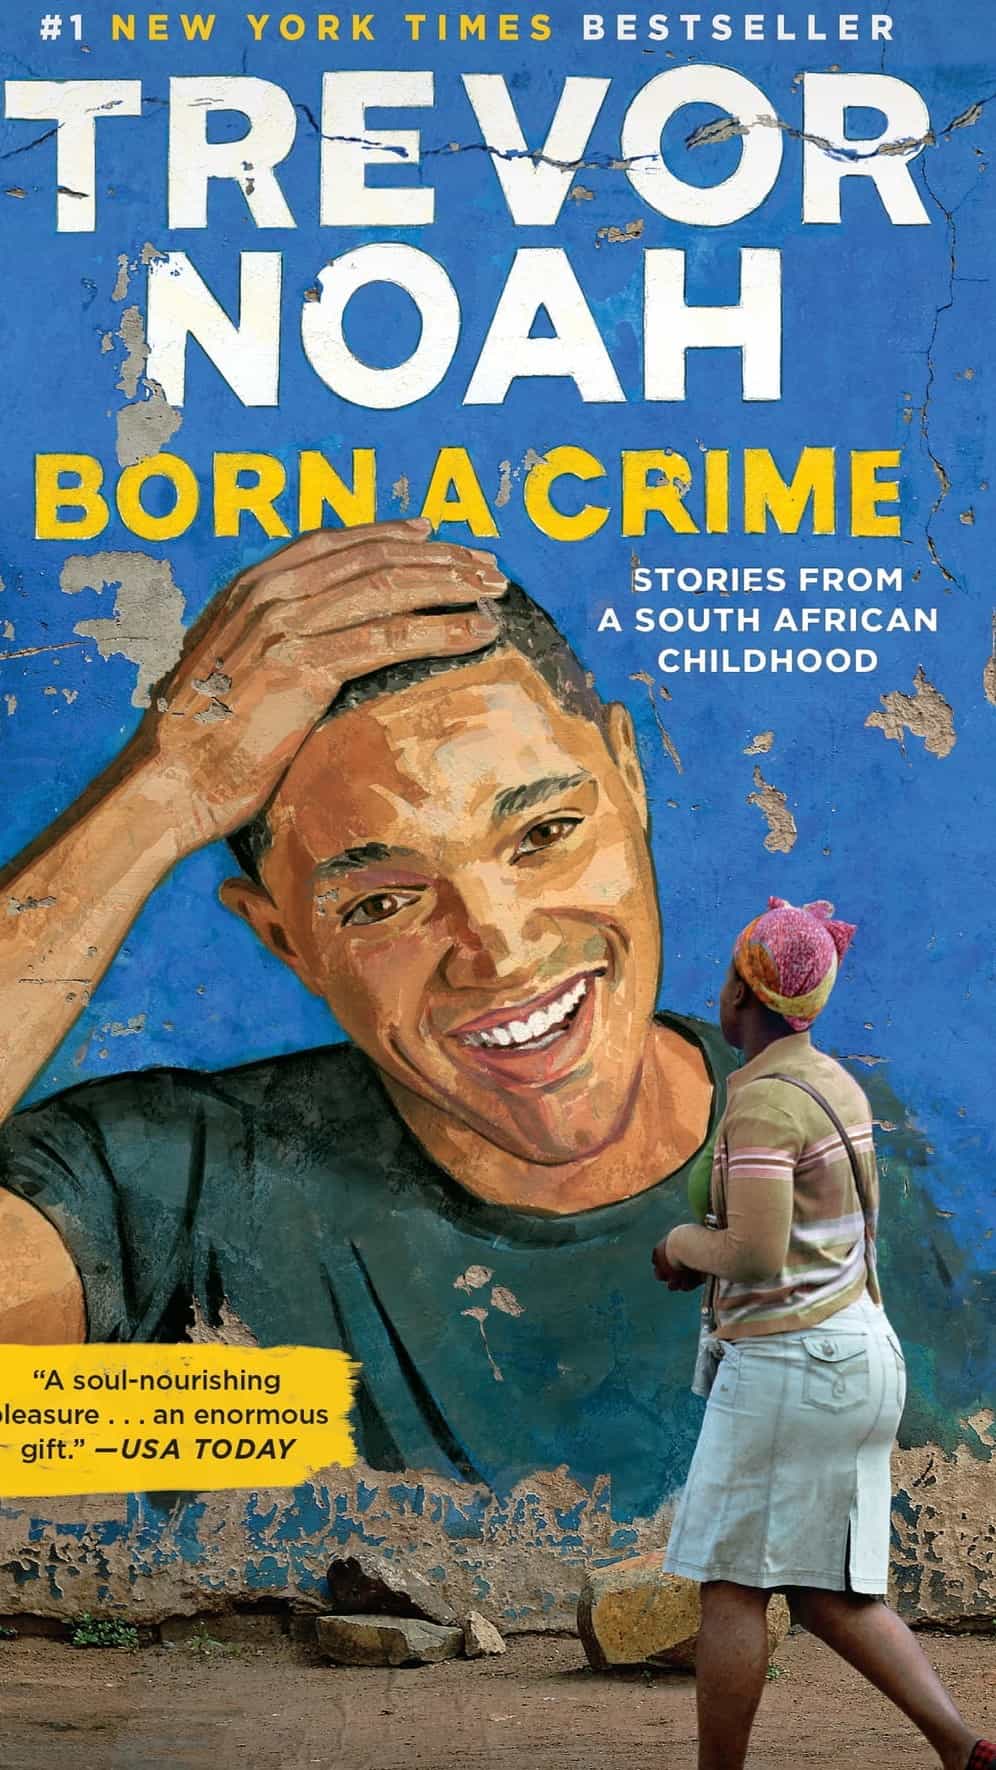 Trevor Noah's memoir, "Born a Crime," was published in November 2016